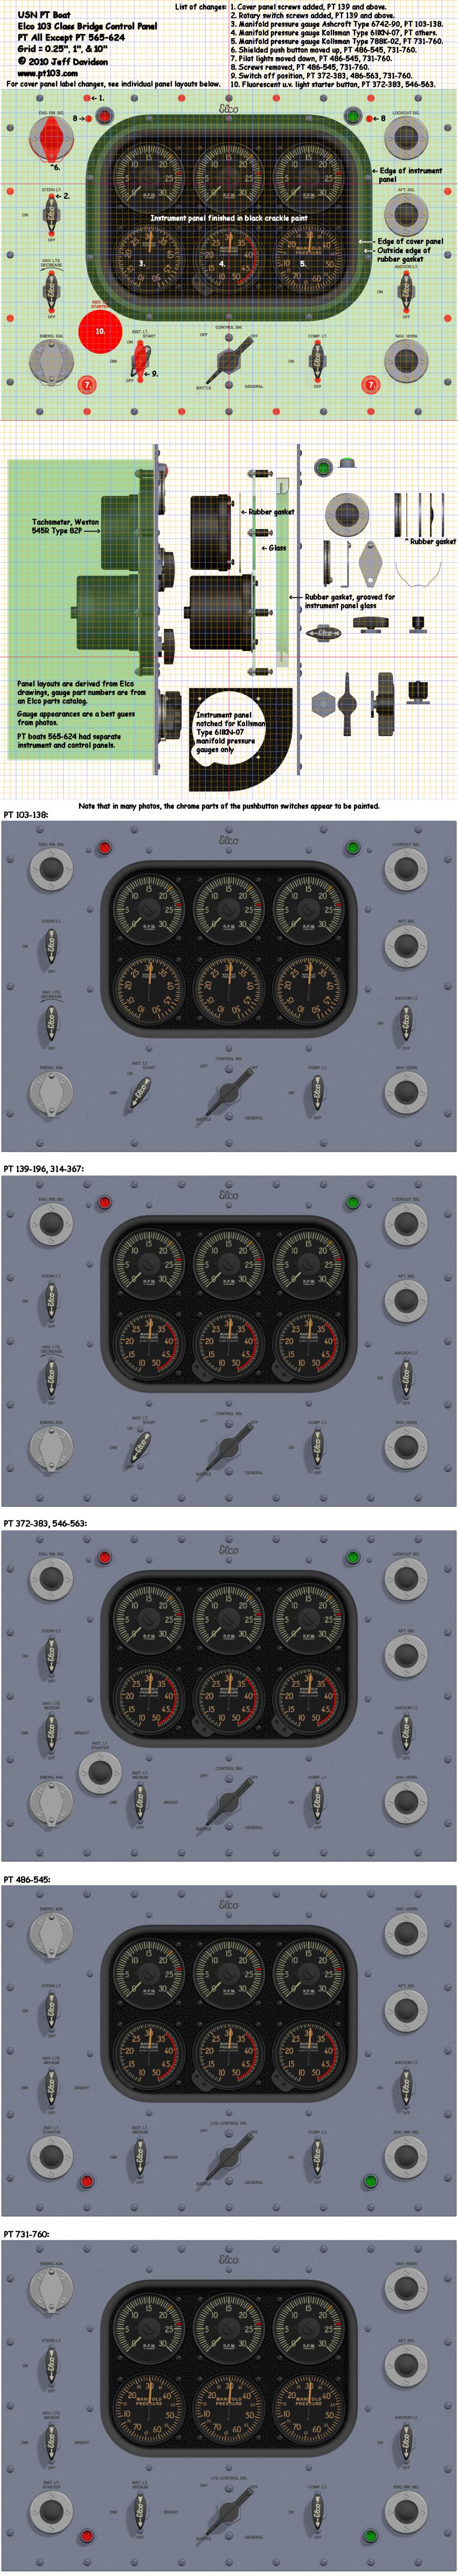 Elco PT Boat 103 Class Bridge Control Panel Dimensions